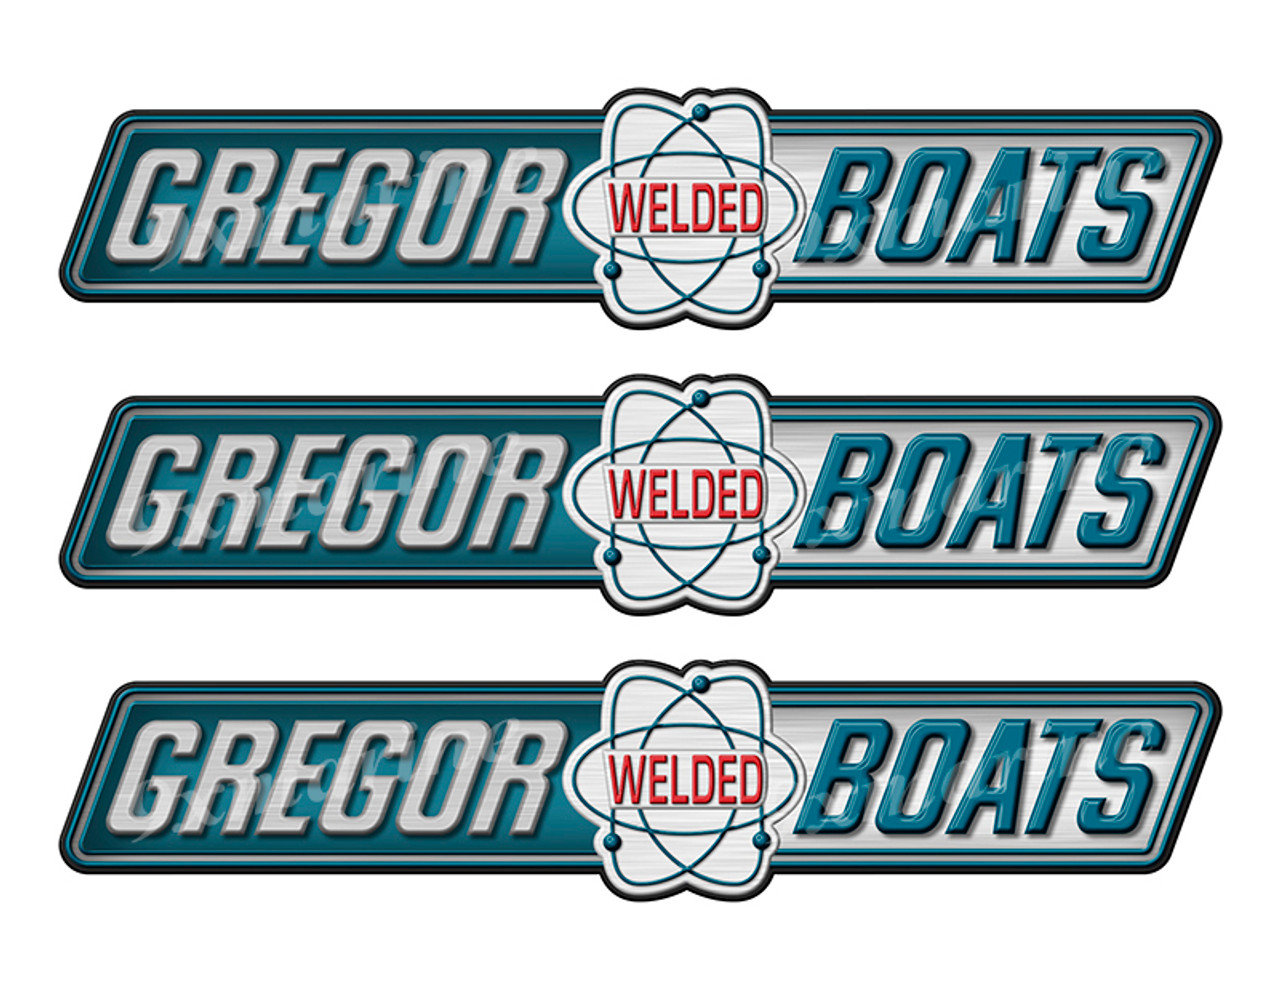 Gregor Welded boat Stickers "3D Vinyl Replica" of originals - 10" long